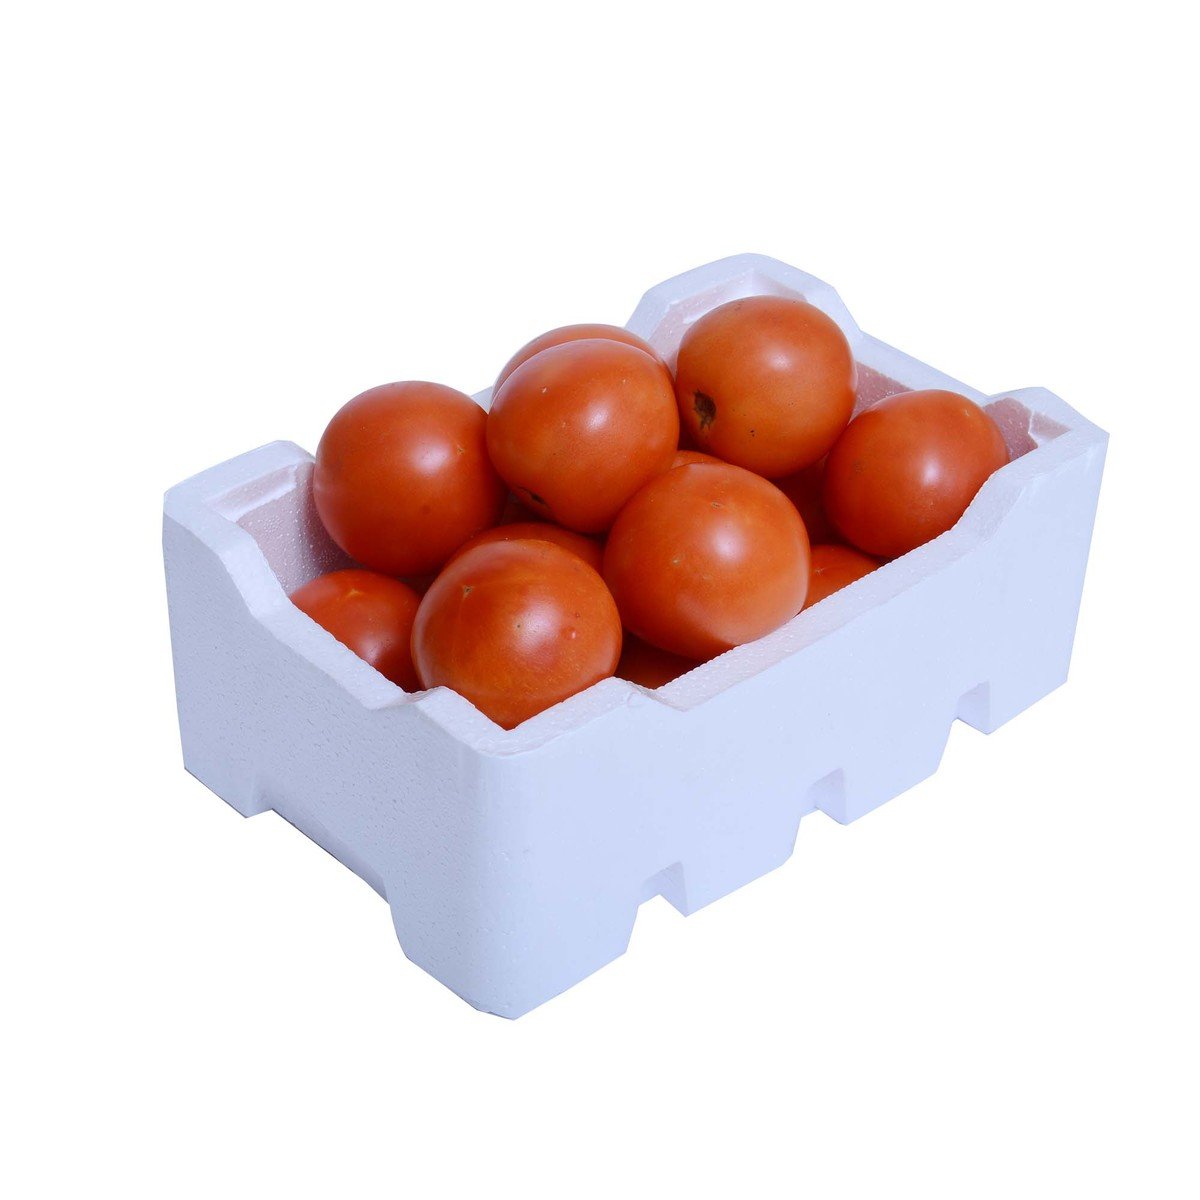 اشتري قم بشراء علبة طماطم ثيرمو 2 كجم وزن تقريبي Online at Best Price من الموقع - من لولو هايبر ماركت Tomatoes في السعودية